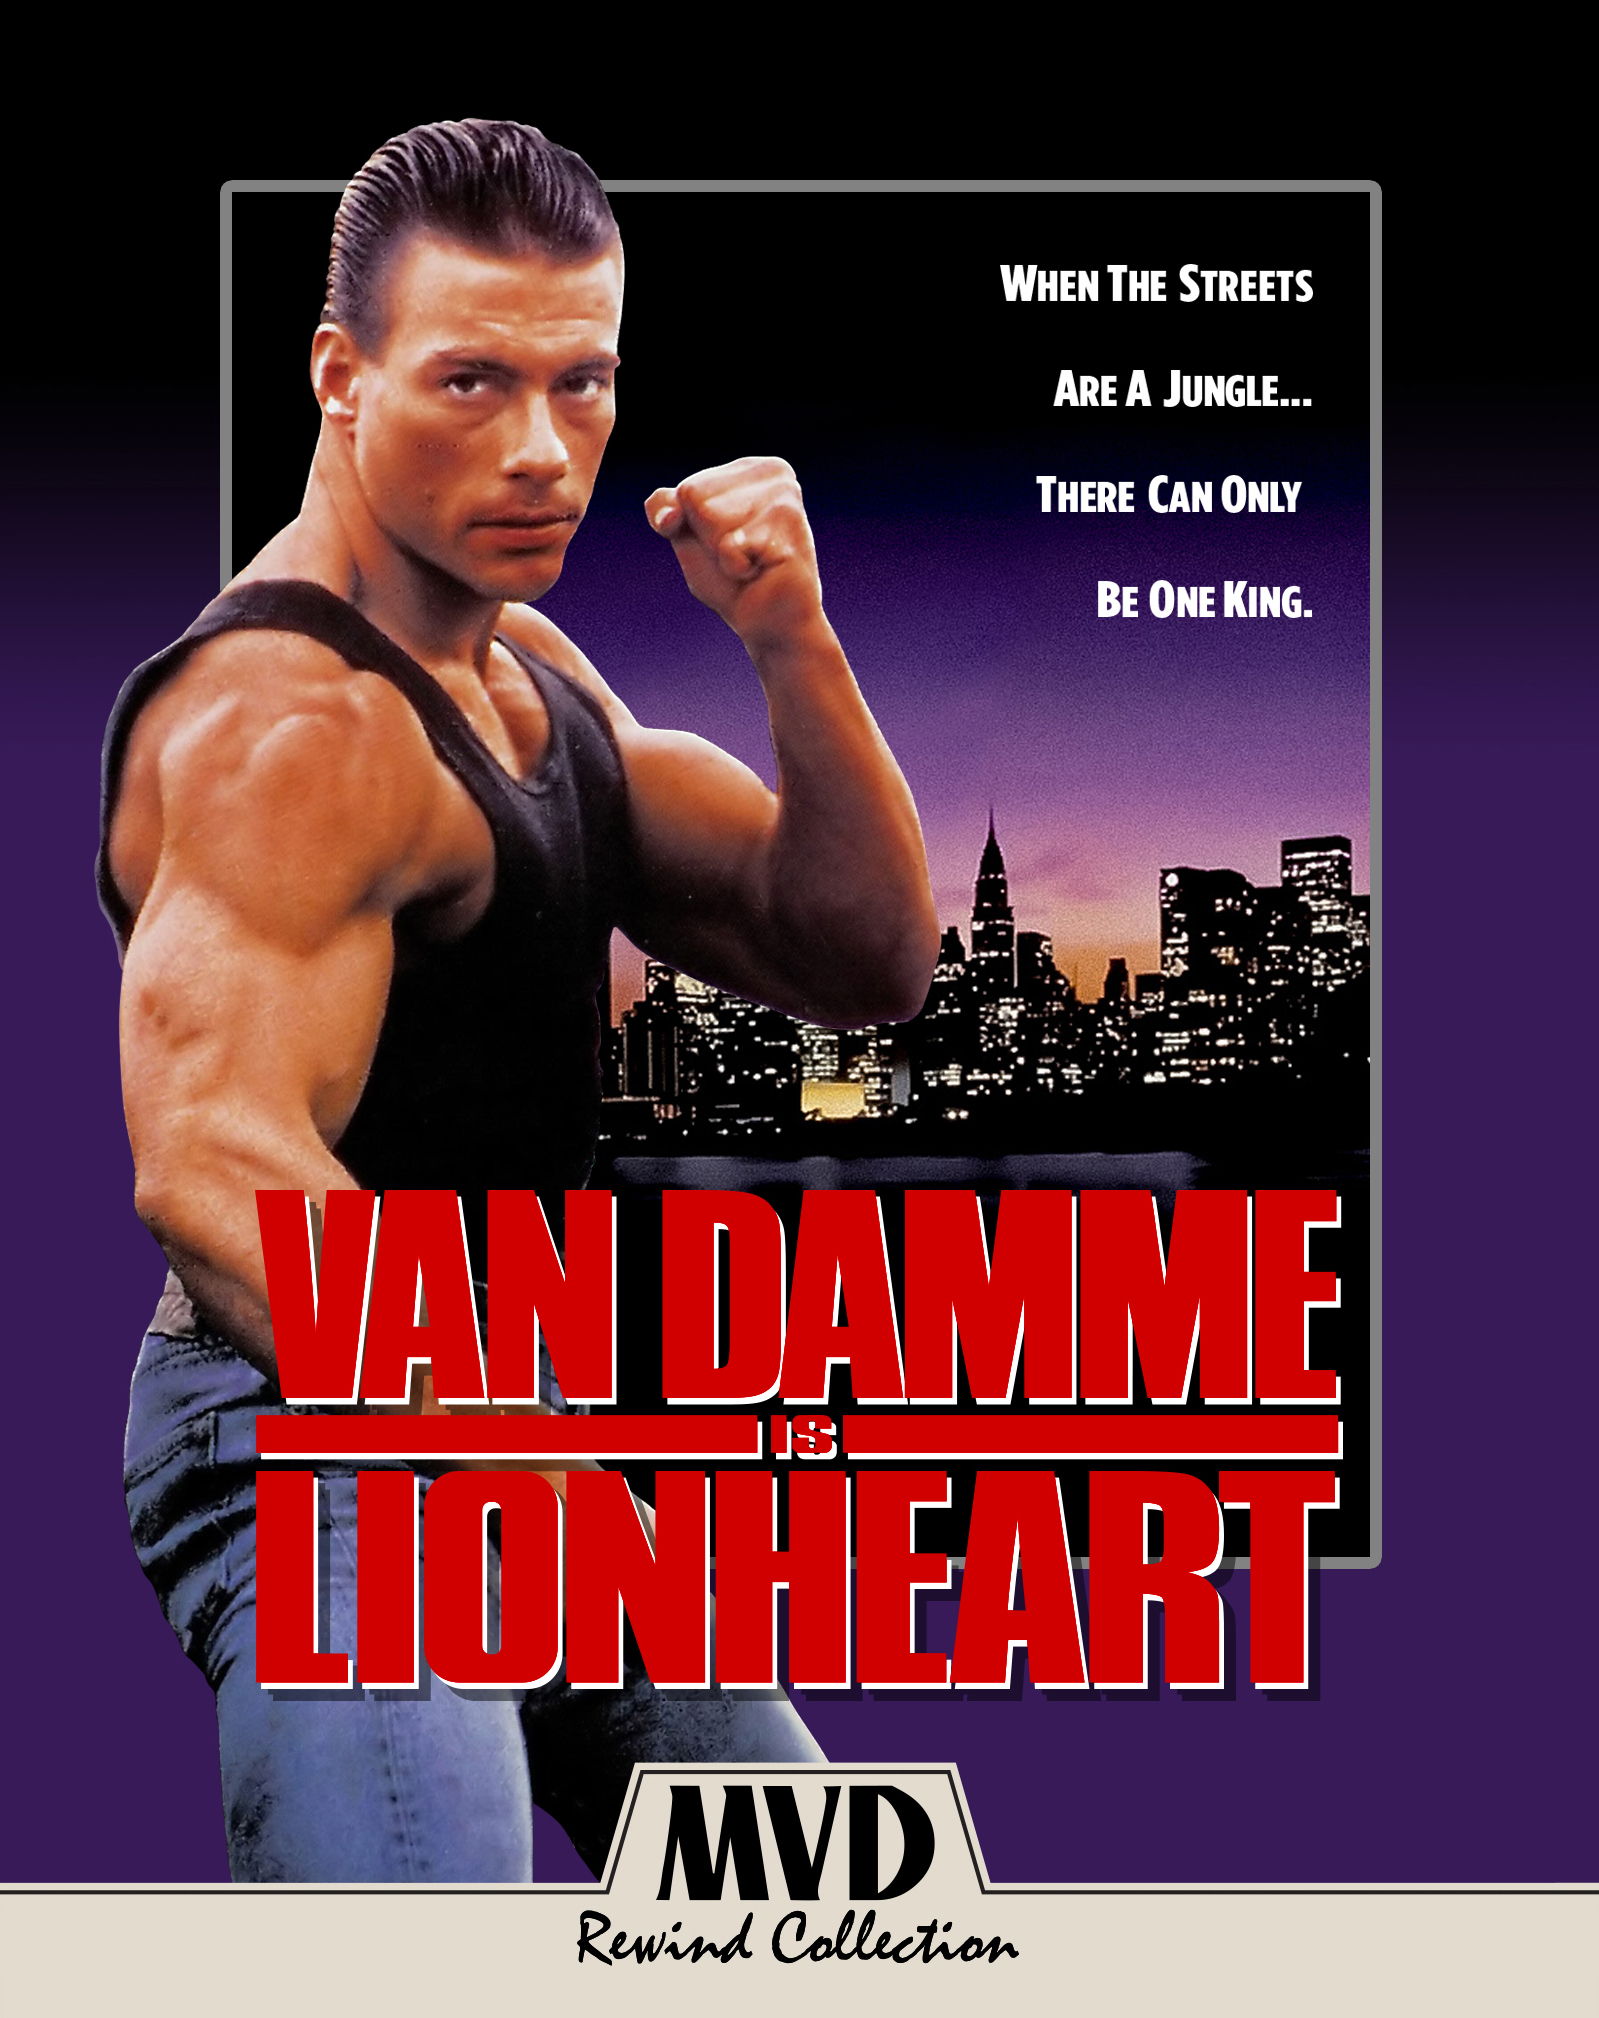 Lionheart Blu Ray 1990 Best Buy